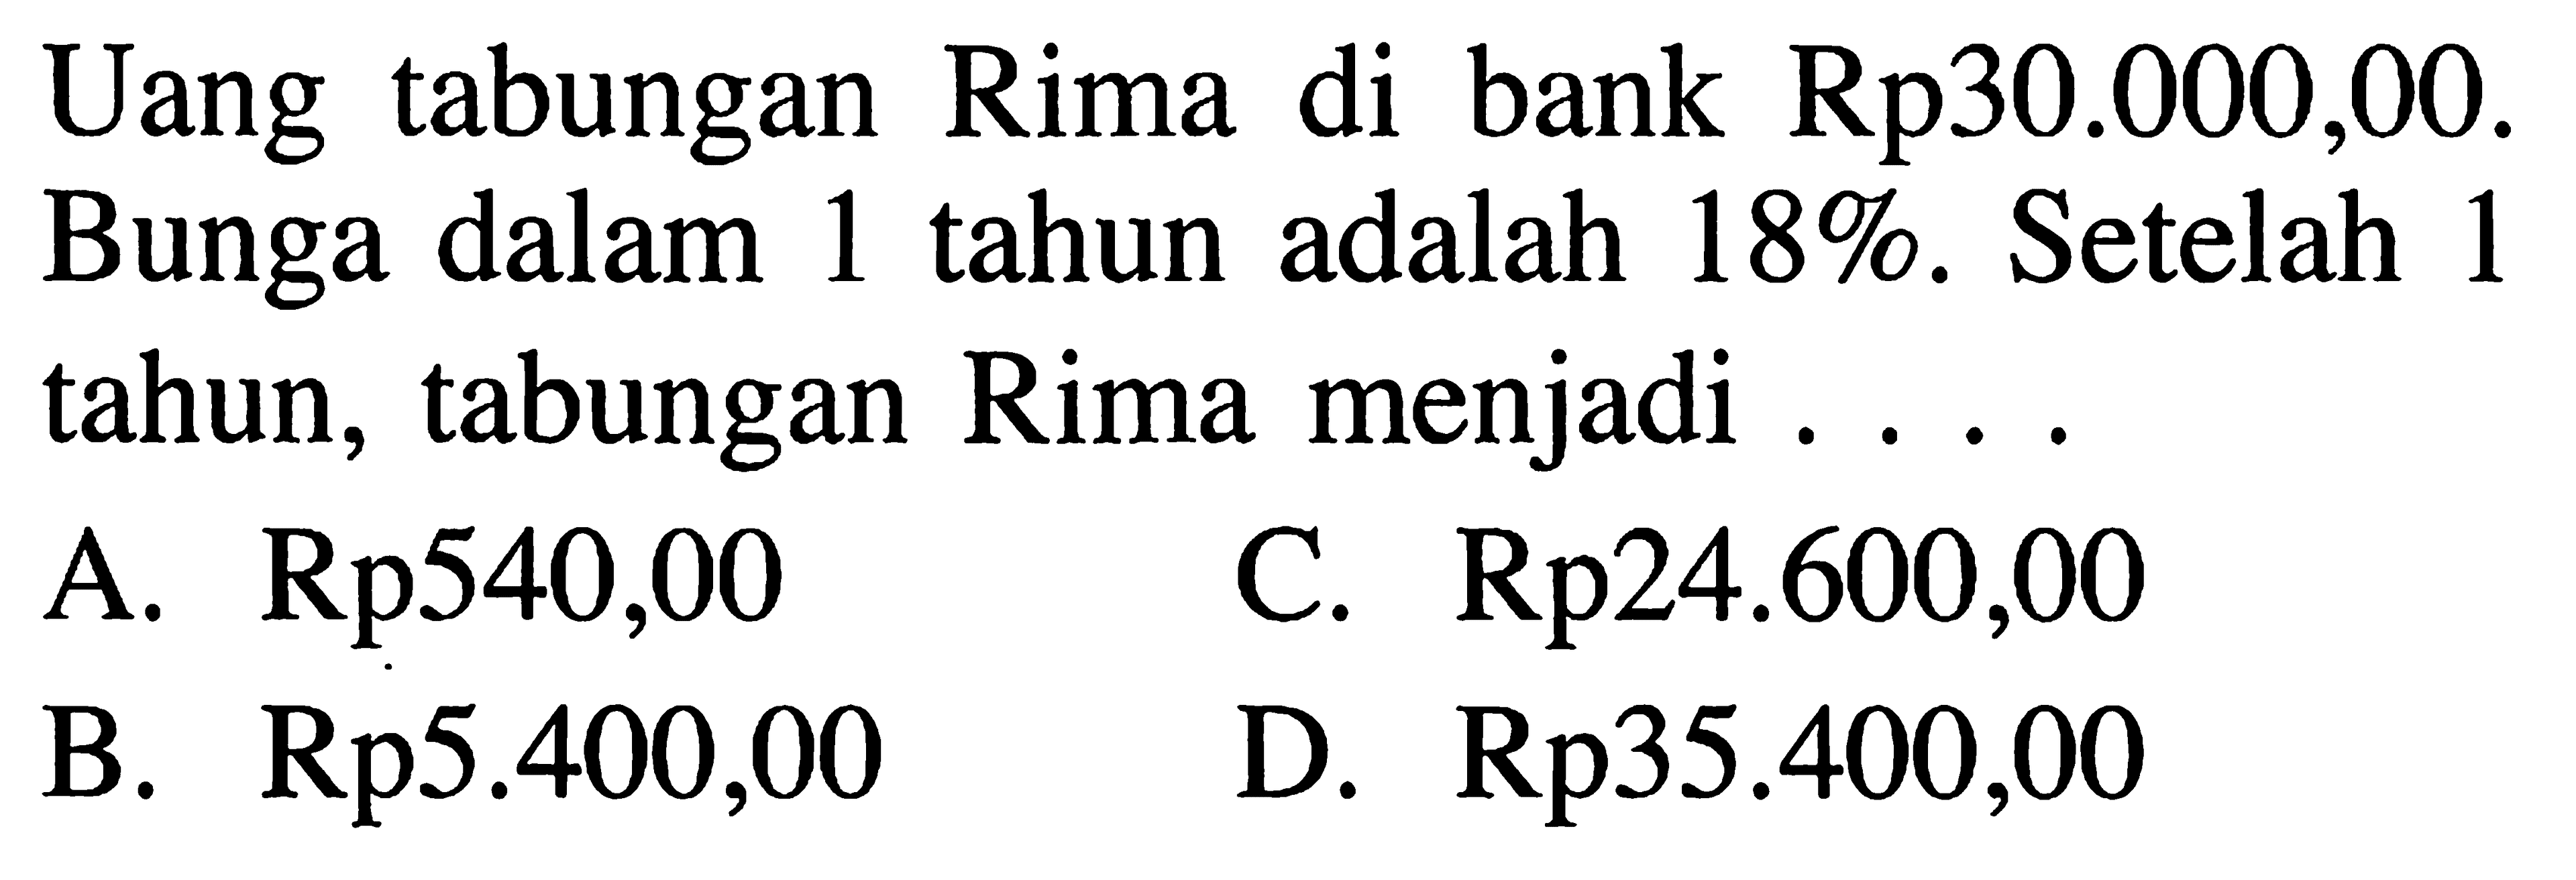 Uang tabungan Rima di bank Rp30.000,00. Bunga dalam 1 tahun adalah 18 %. Setelah 1 tahun, tabungan Rima menjadi ....
